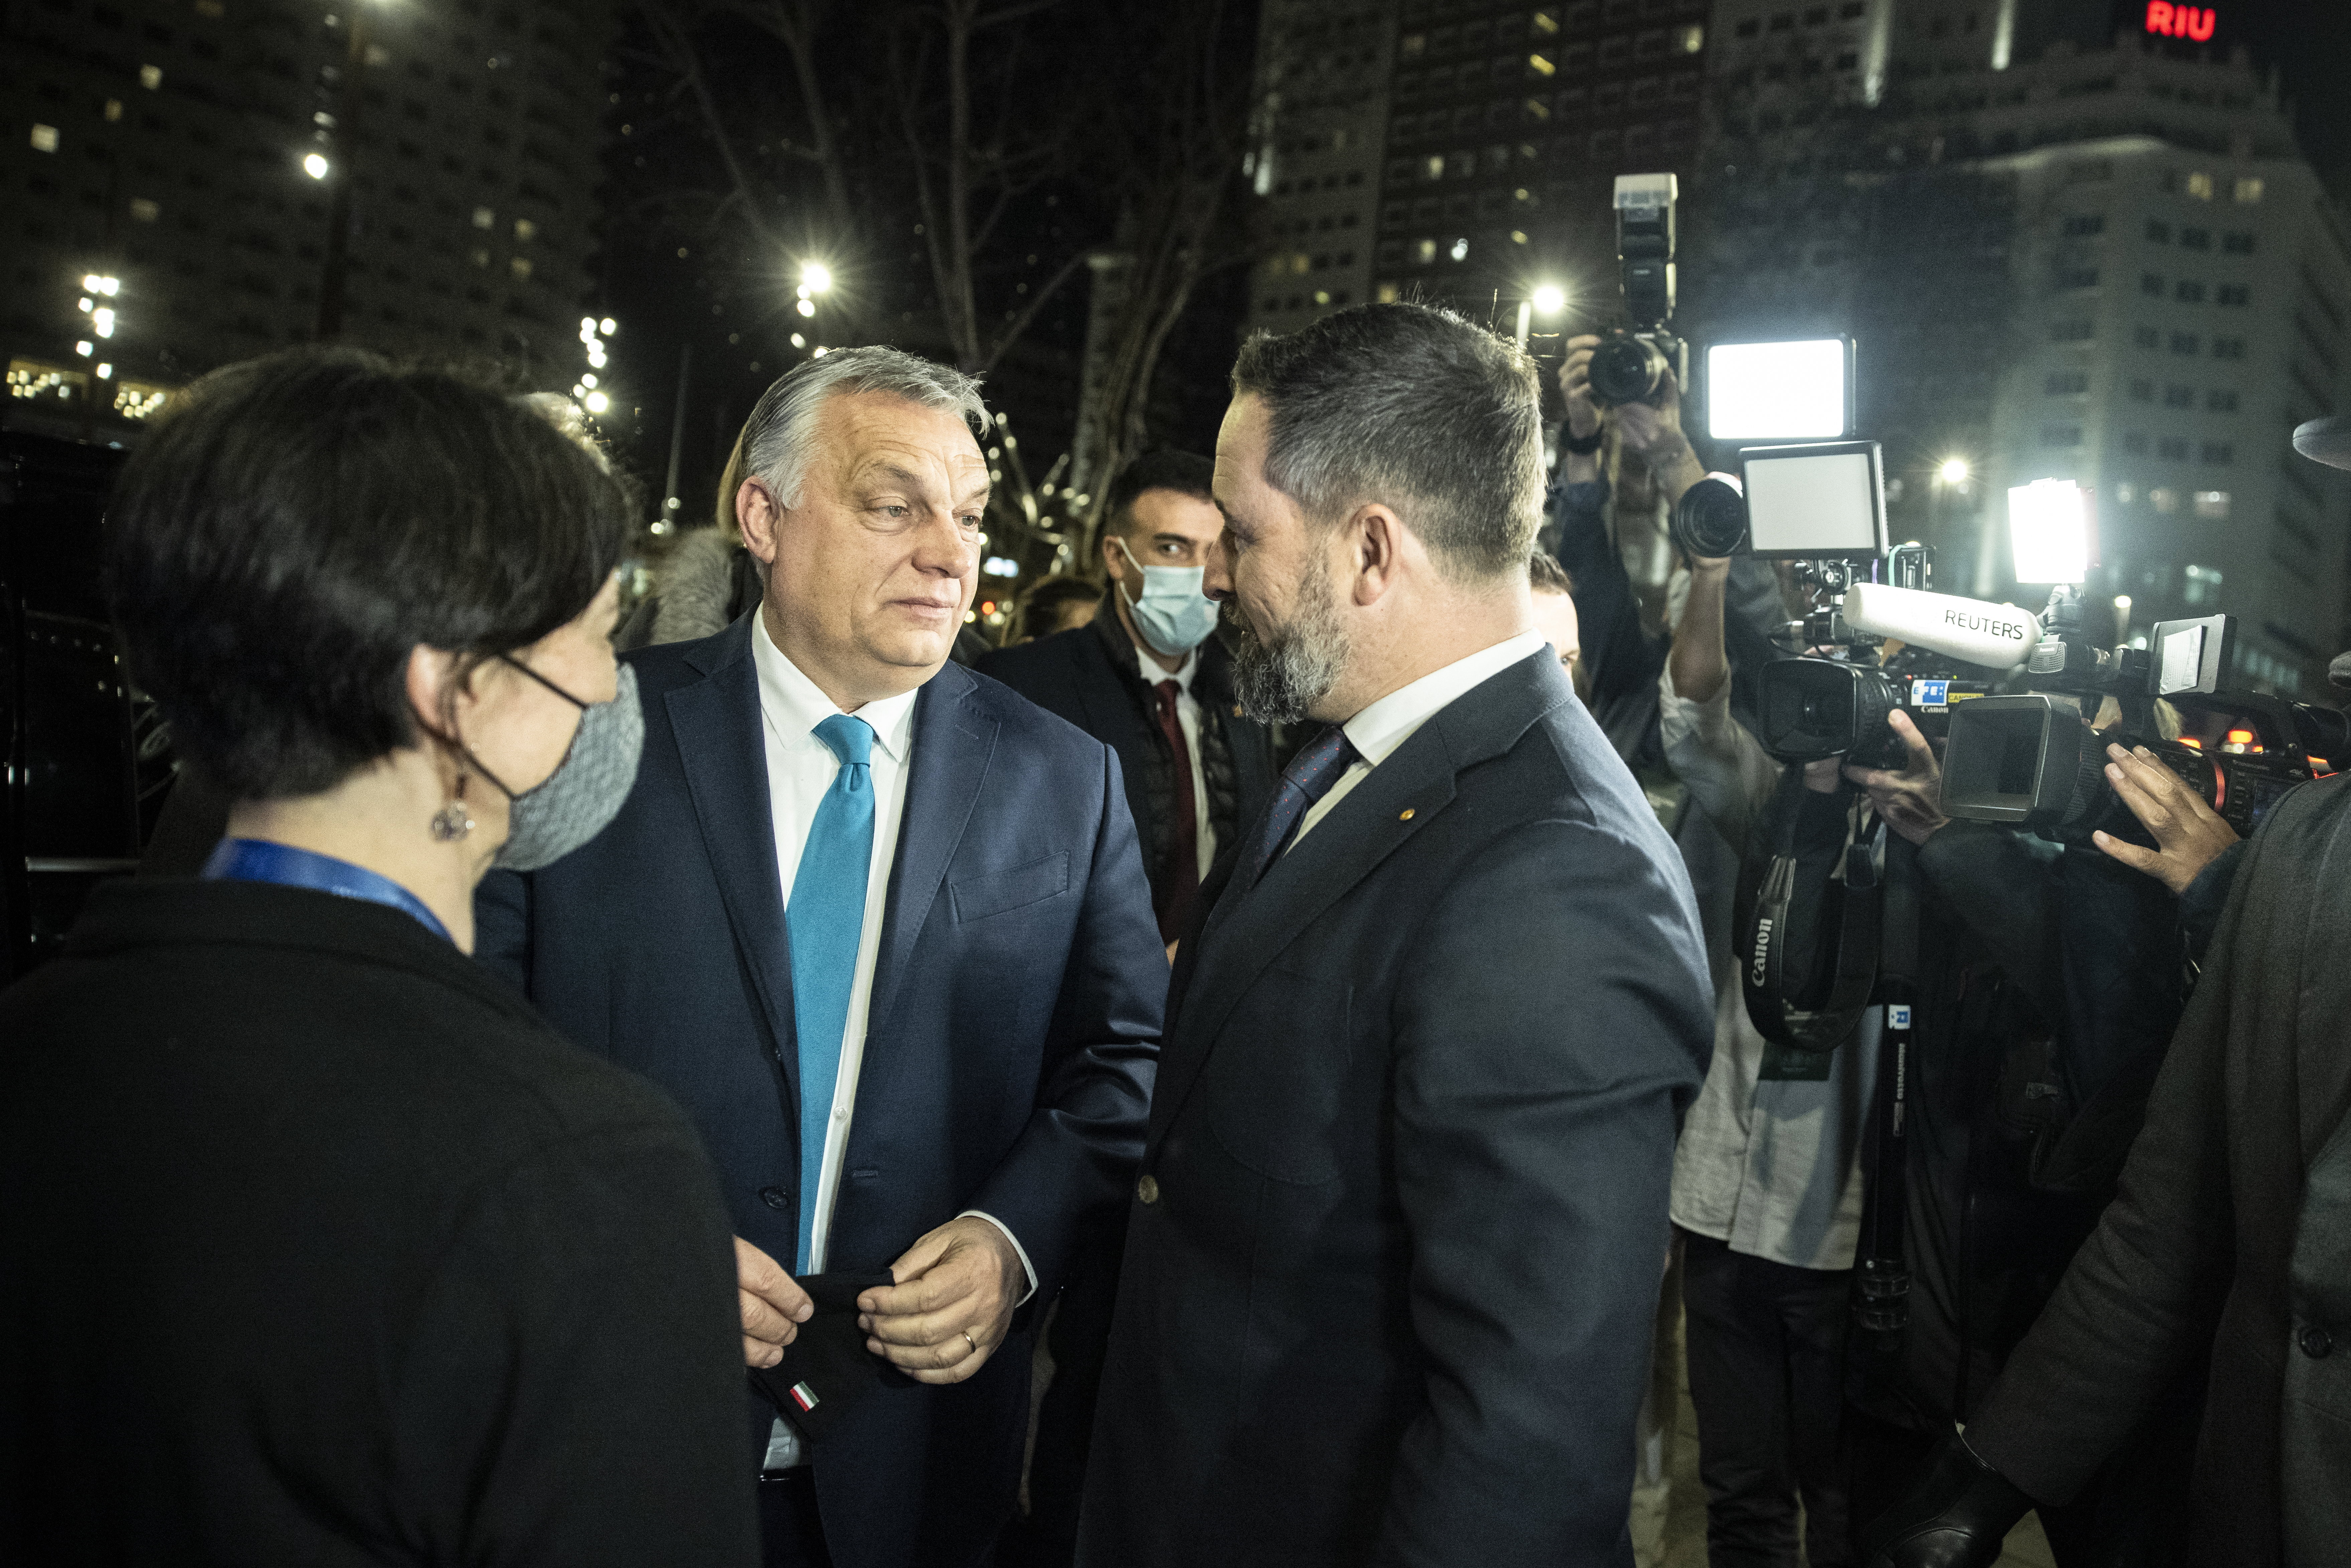 Humánus gesztust tett a jobboldal Spanyolországban, Orbán szélsőjobbos szövetségese azonnal szakított vele